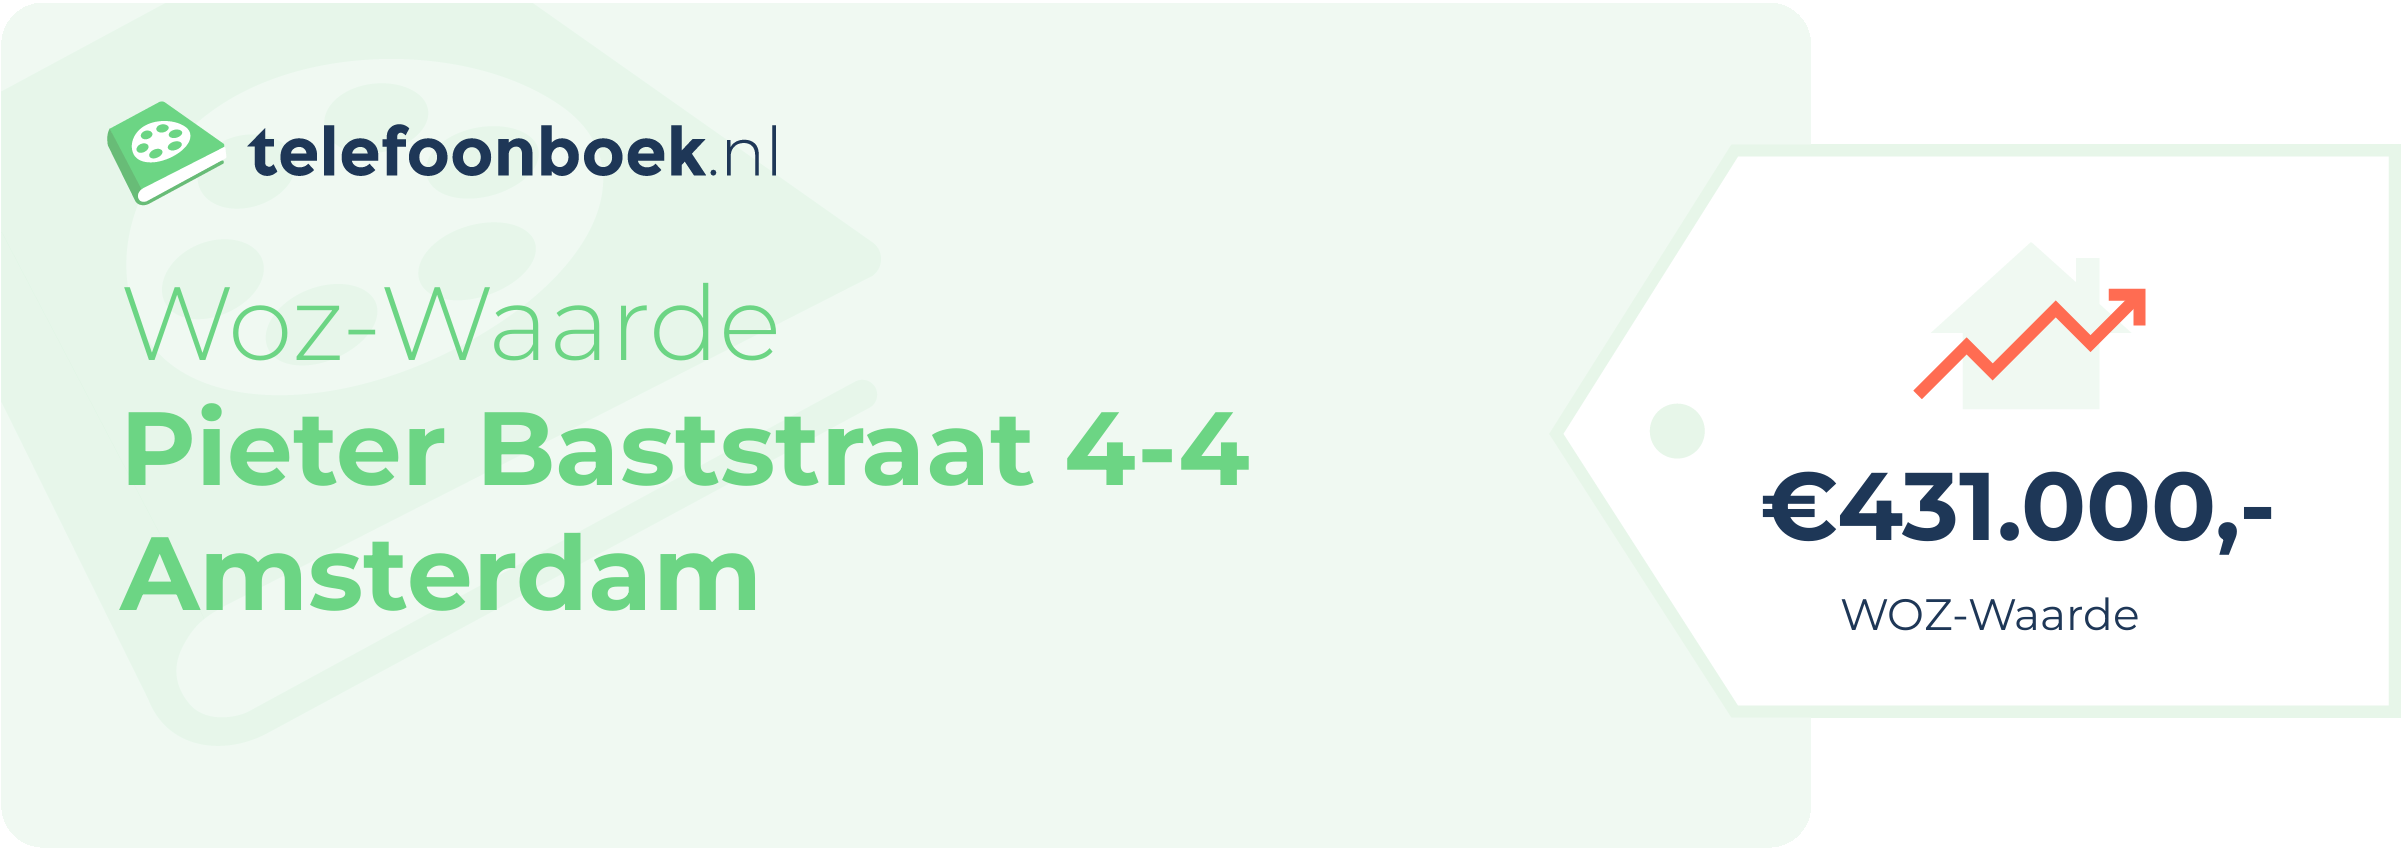 WOZ-waarde Pieter Baststraat 4-4 Amsterdam